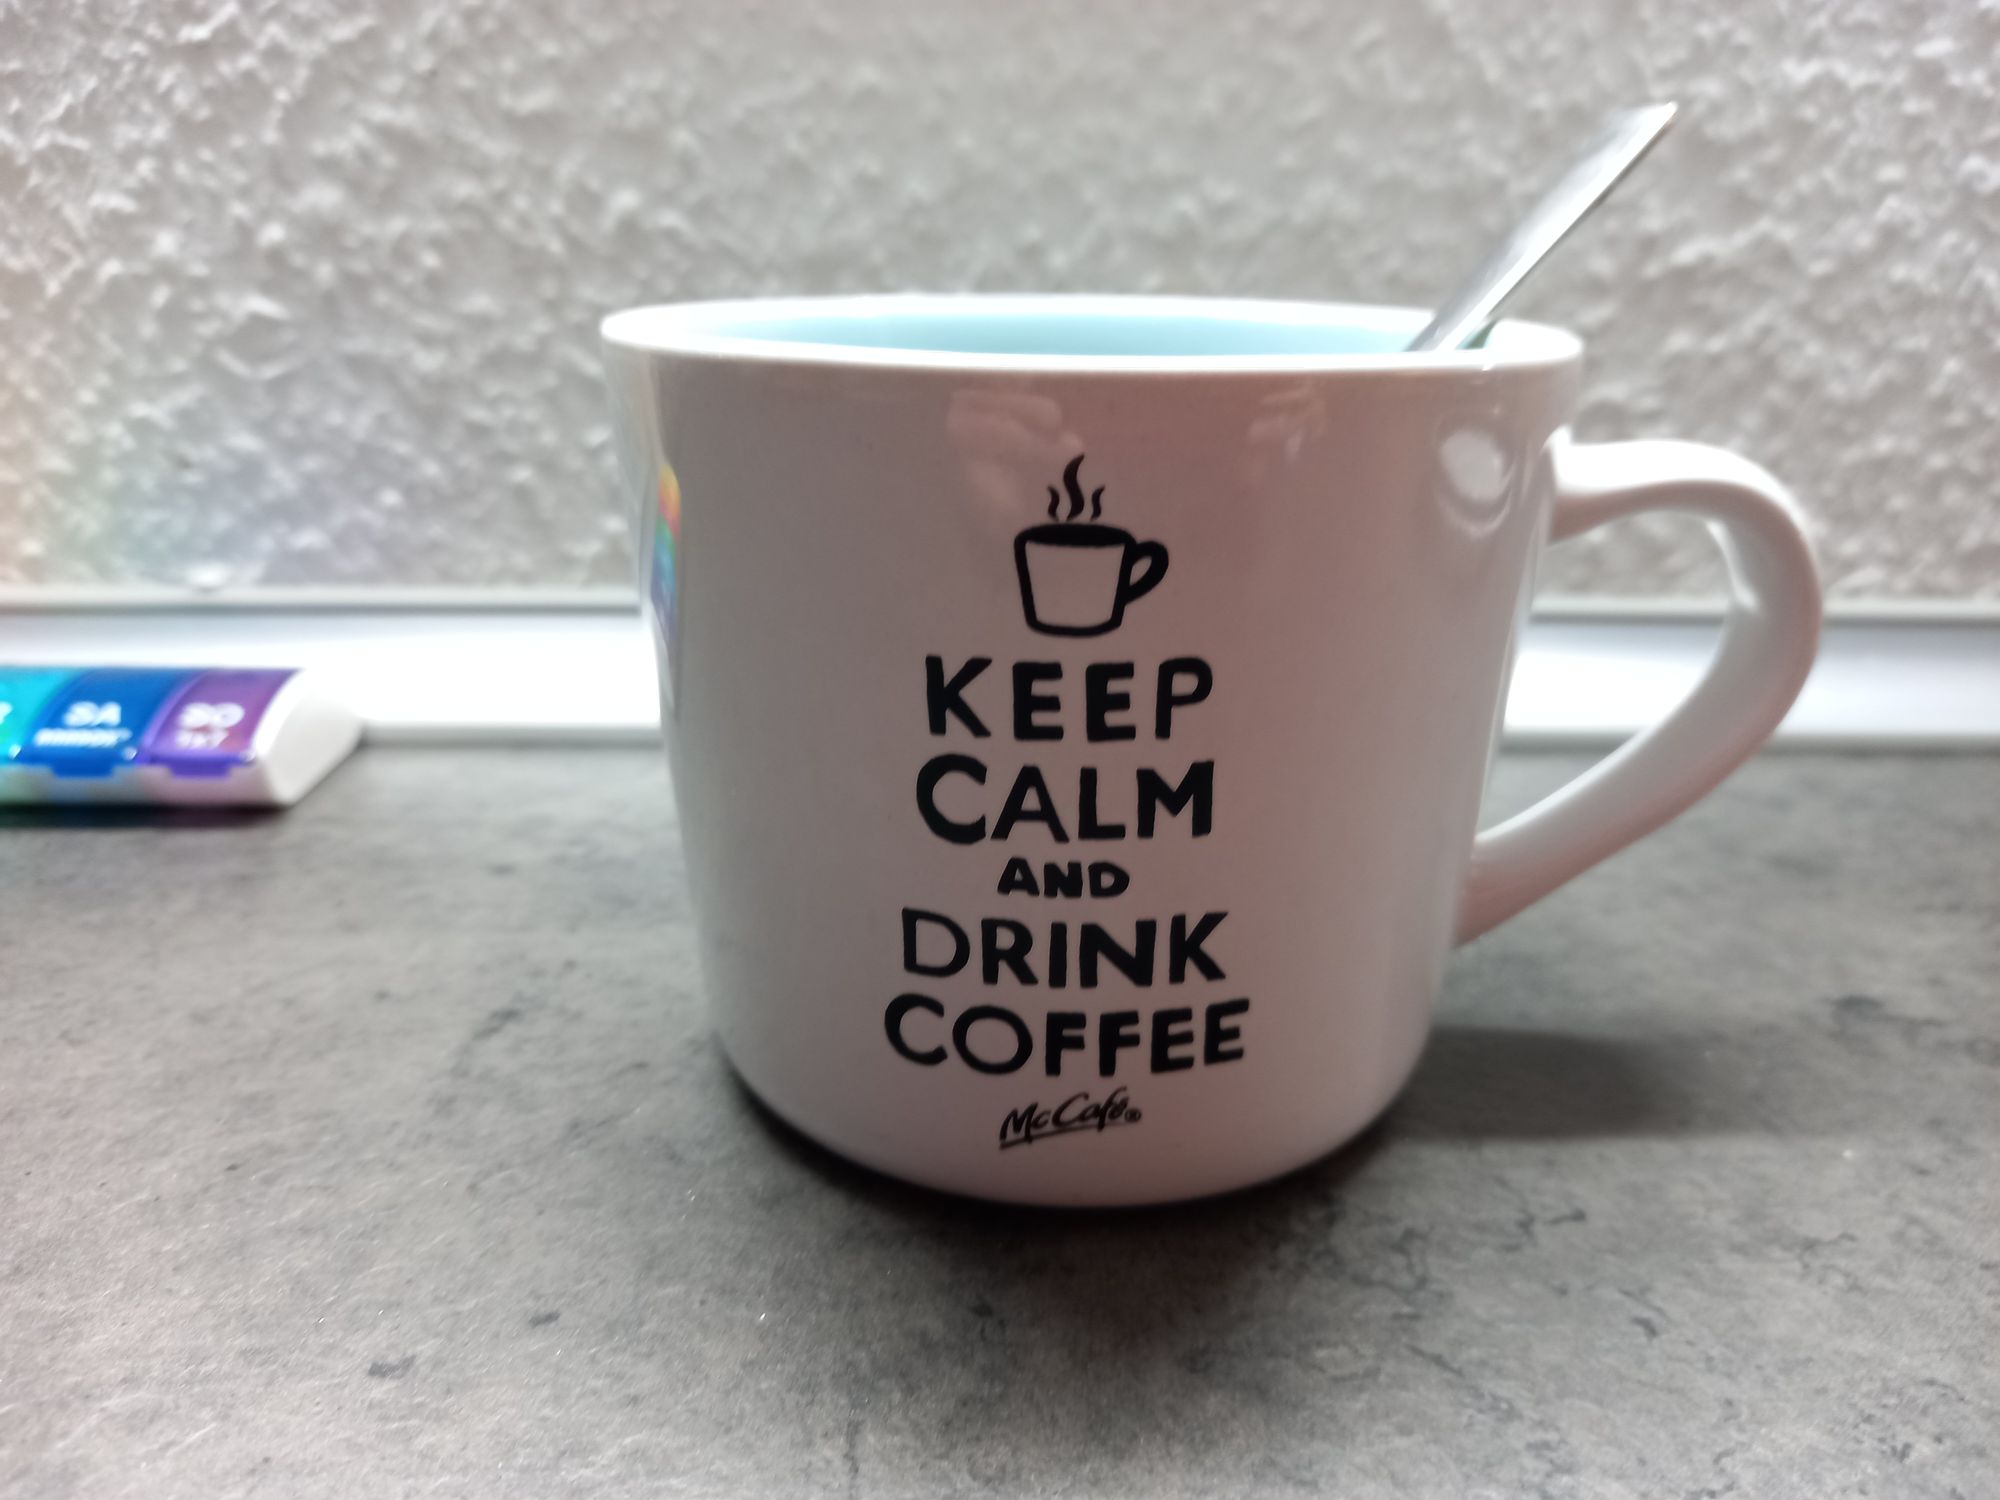 Keep calm and drink coffee - mein Mantra heute, wir wären nämlich heute erst aus Schottland zurück!